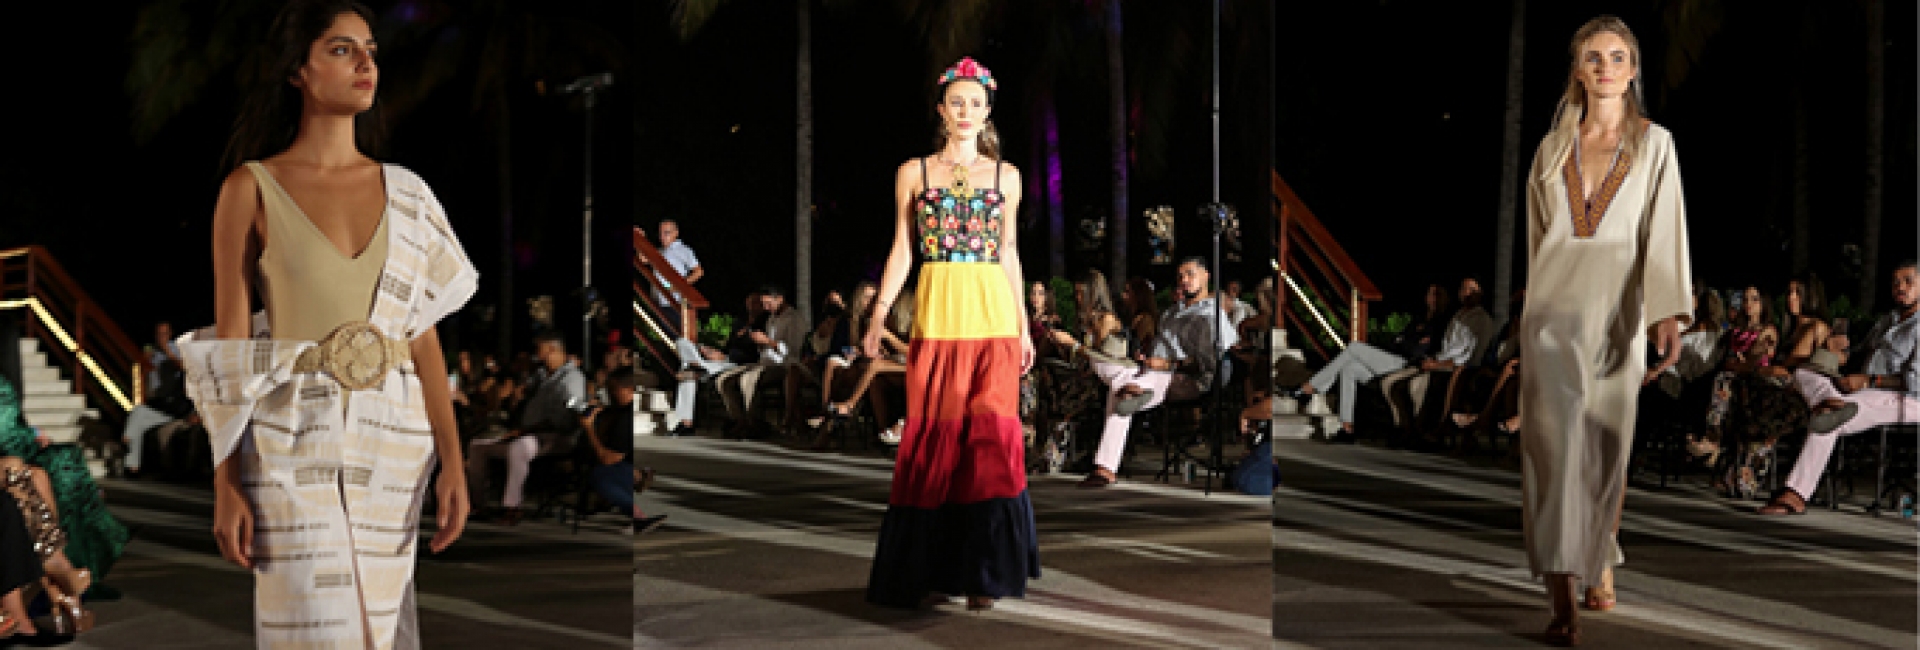 Exitoso tercer aniversario de Mexico Fashion Show